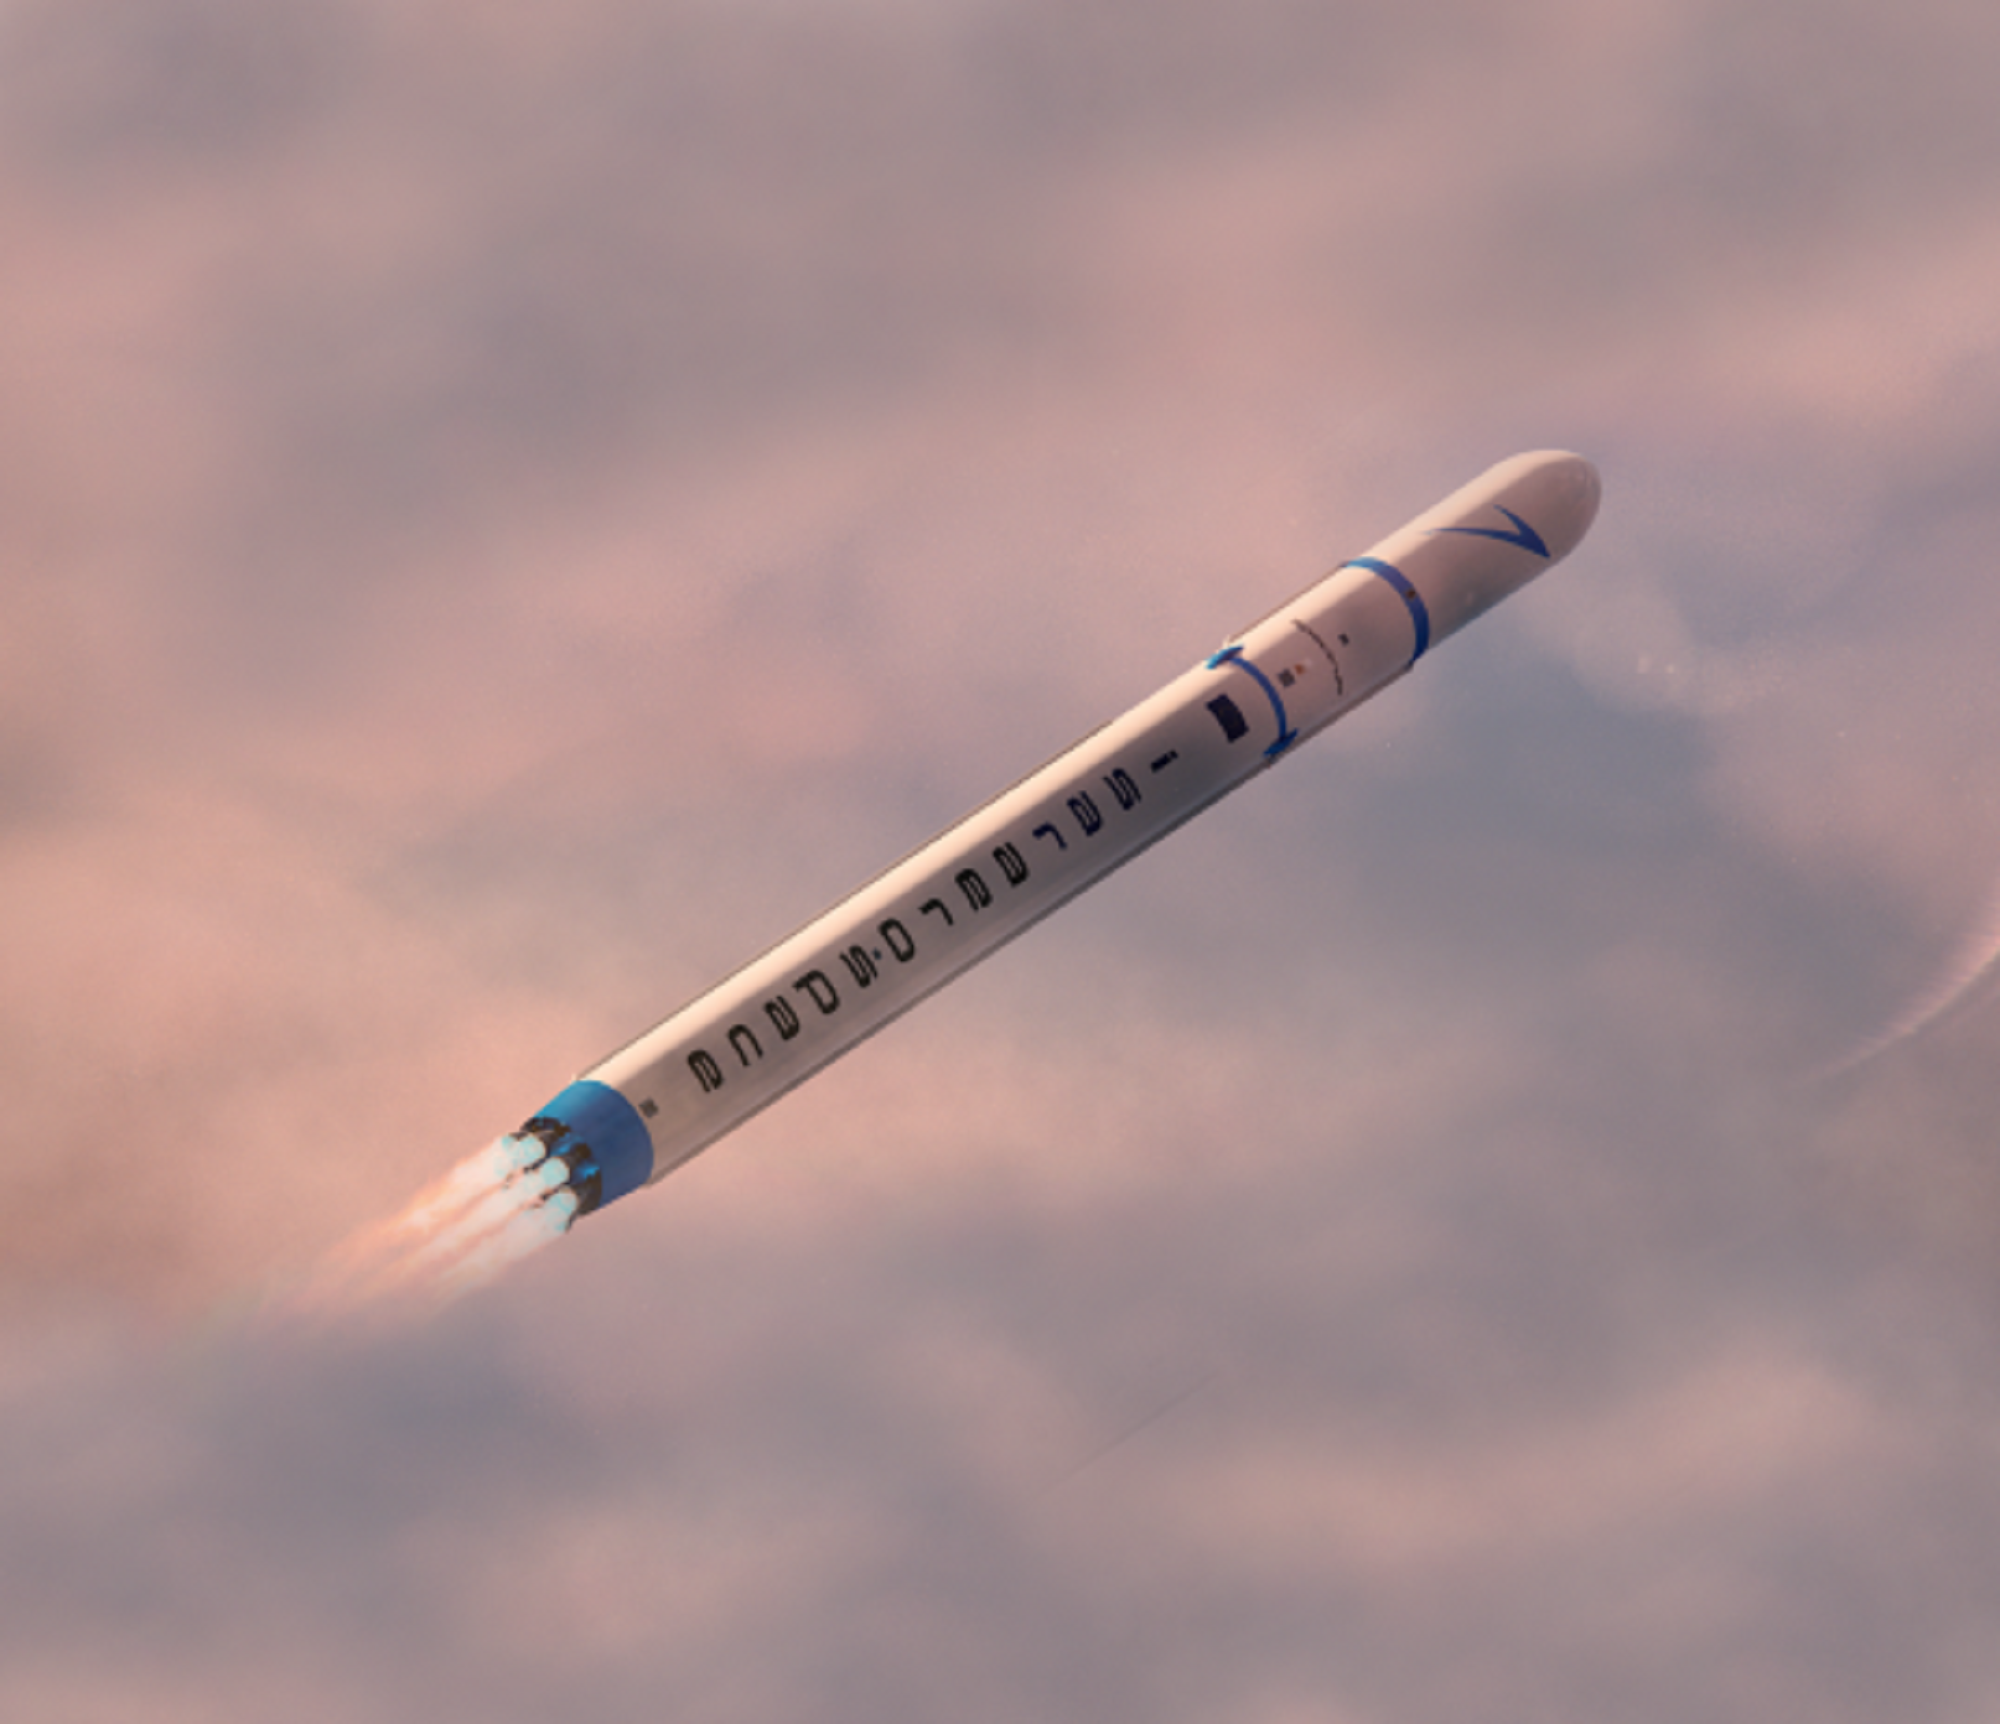 Coup de tonnerre, Airbus Space confie à Isar Aerospace plusieurs lancements de satellites